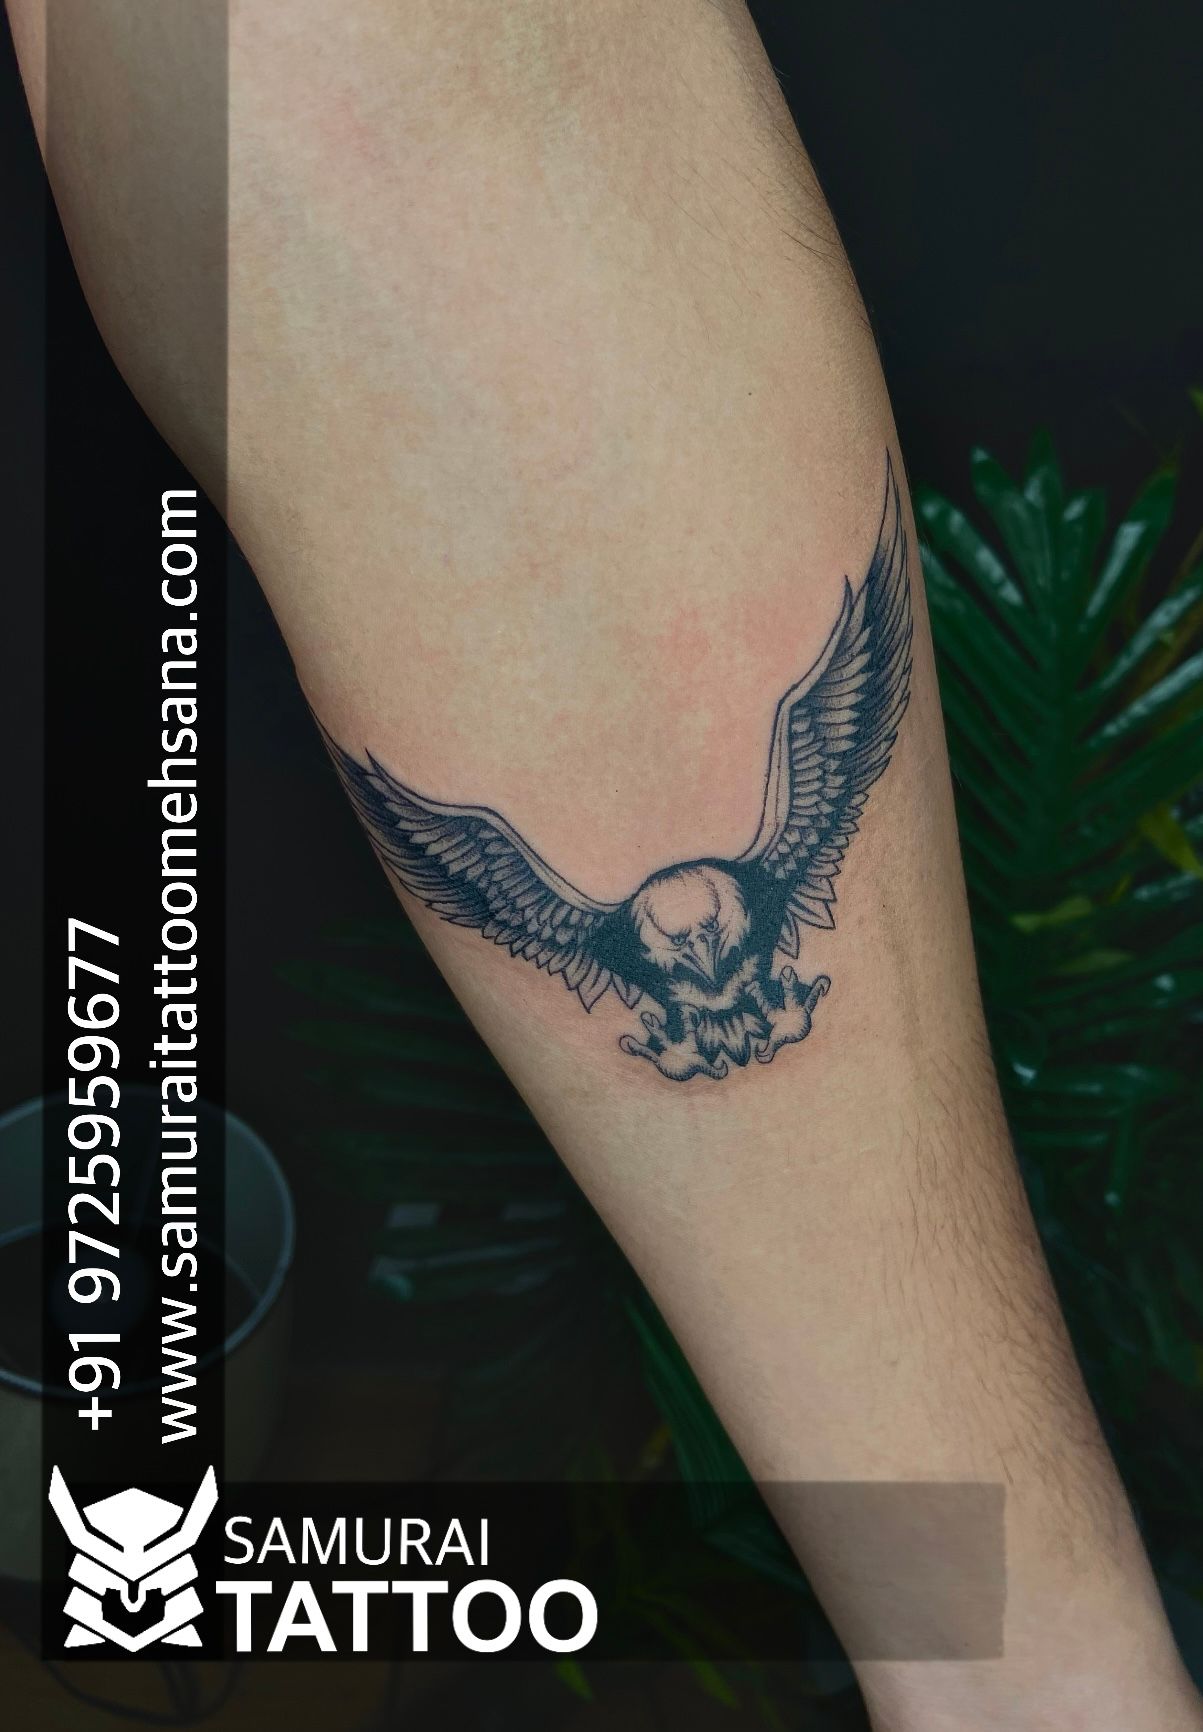 Tattoo uploaded by Tashan Tattoo  Handband tattoo  eagle tattoo  Egale  with handband tattoo  hand band tattoo  Tattoodo